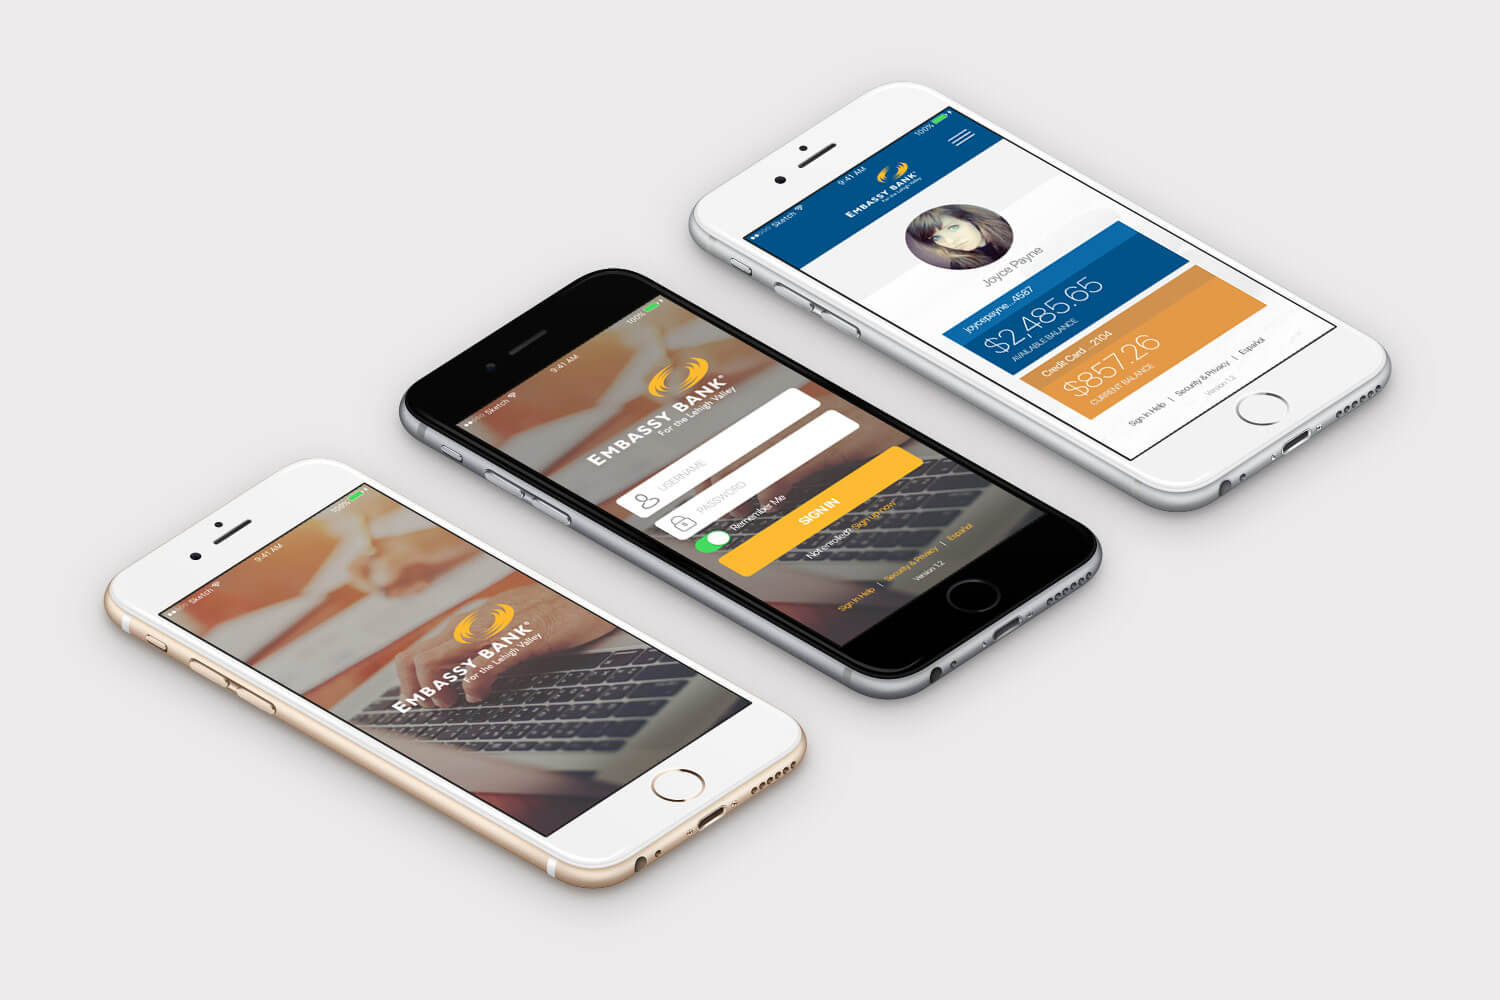 Embassy Bank UI Mobile App Design Mock-Up